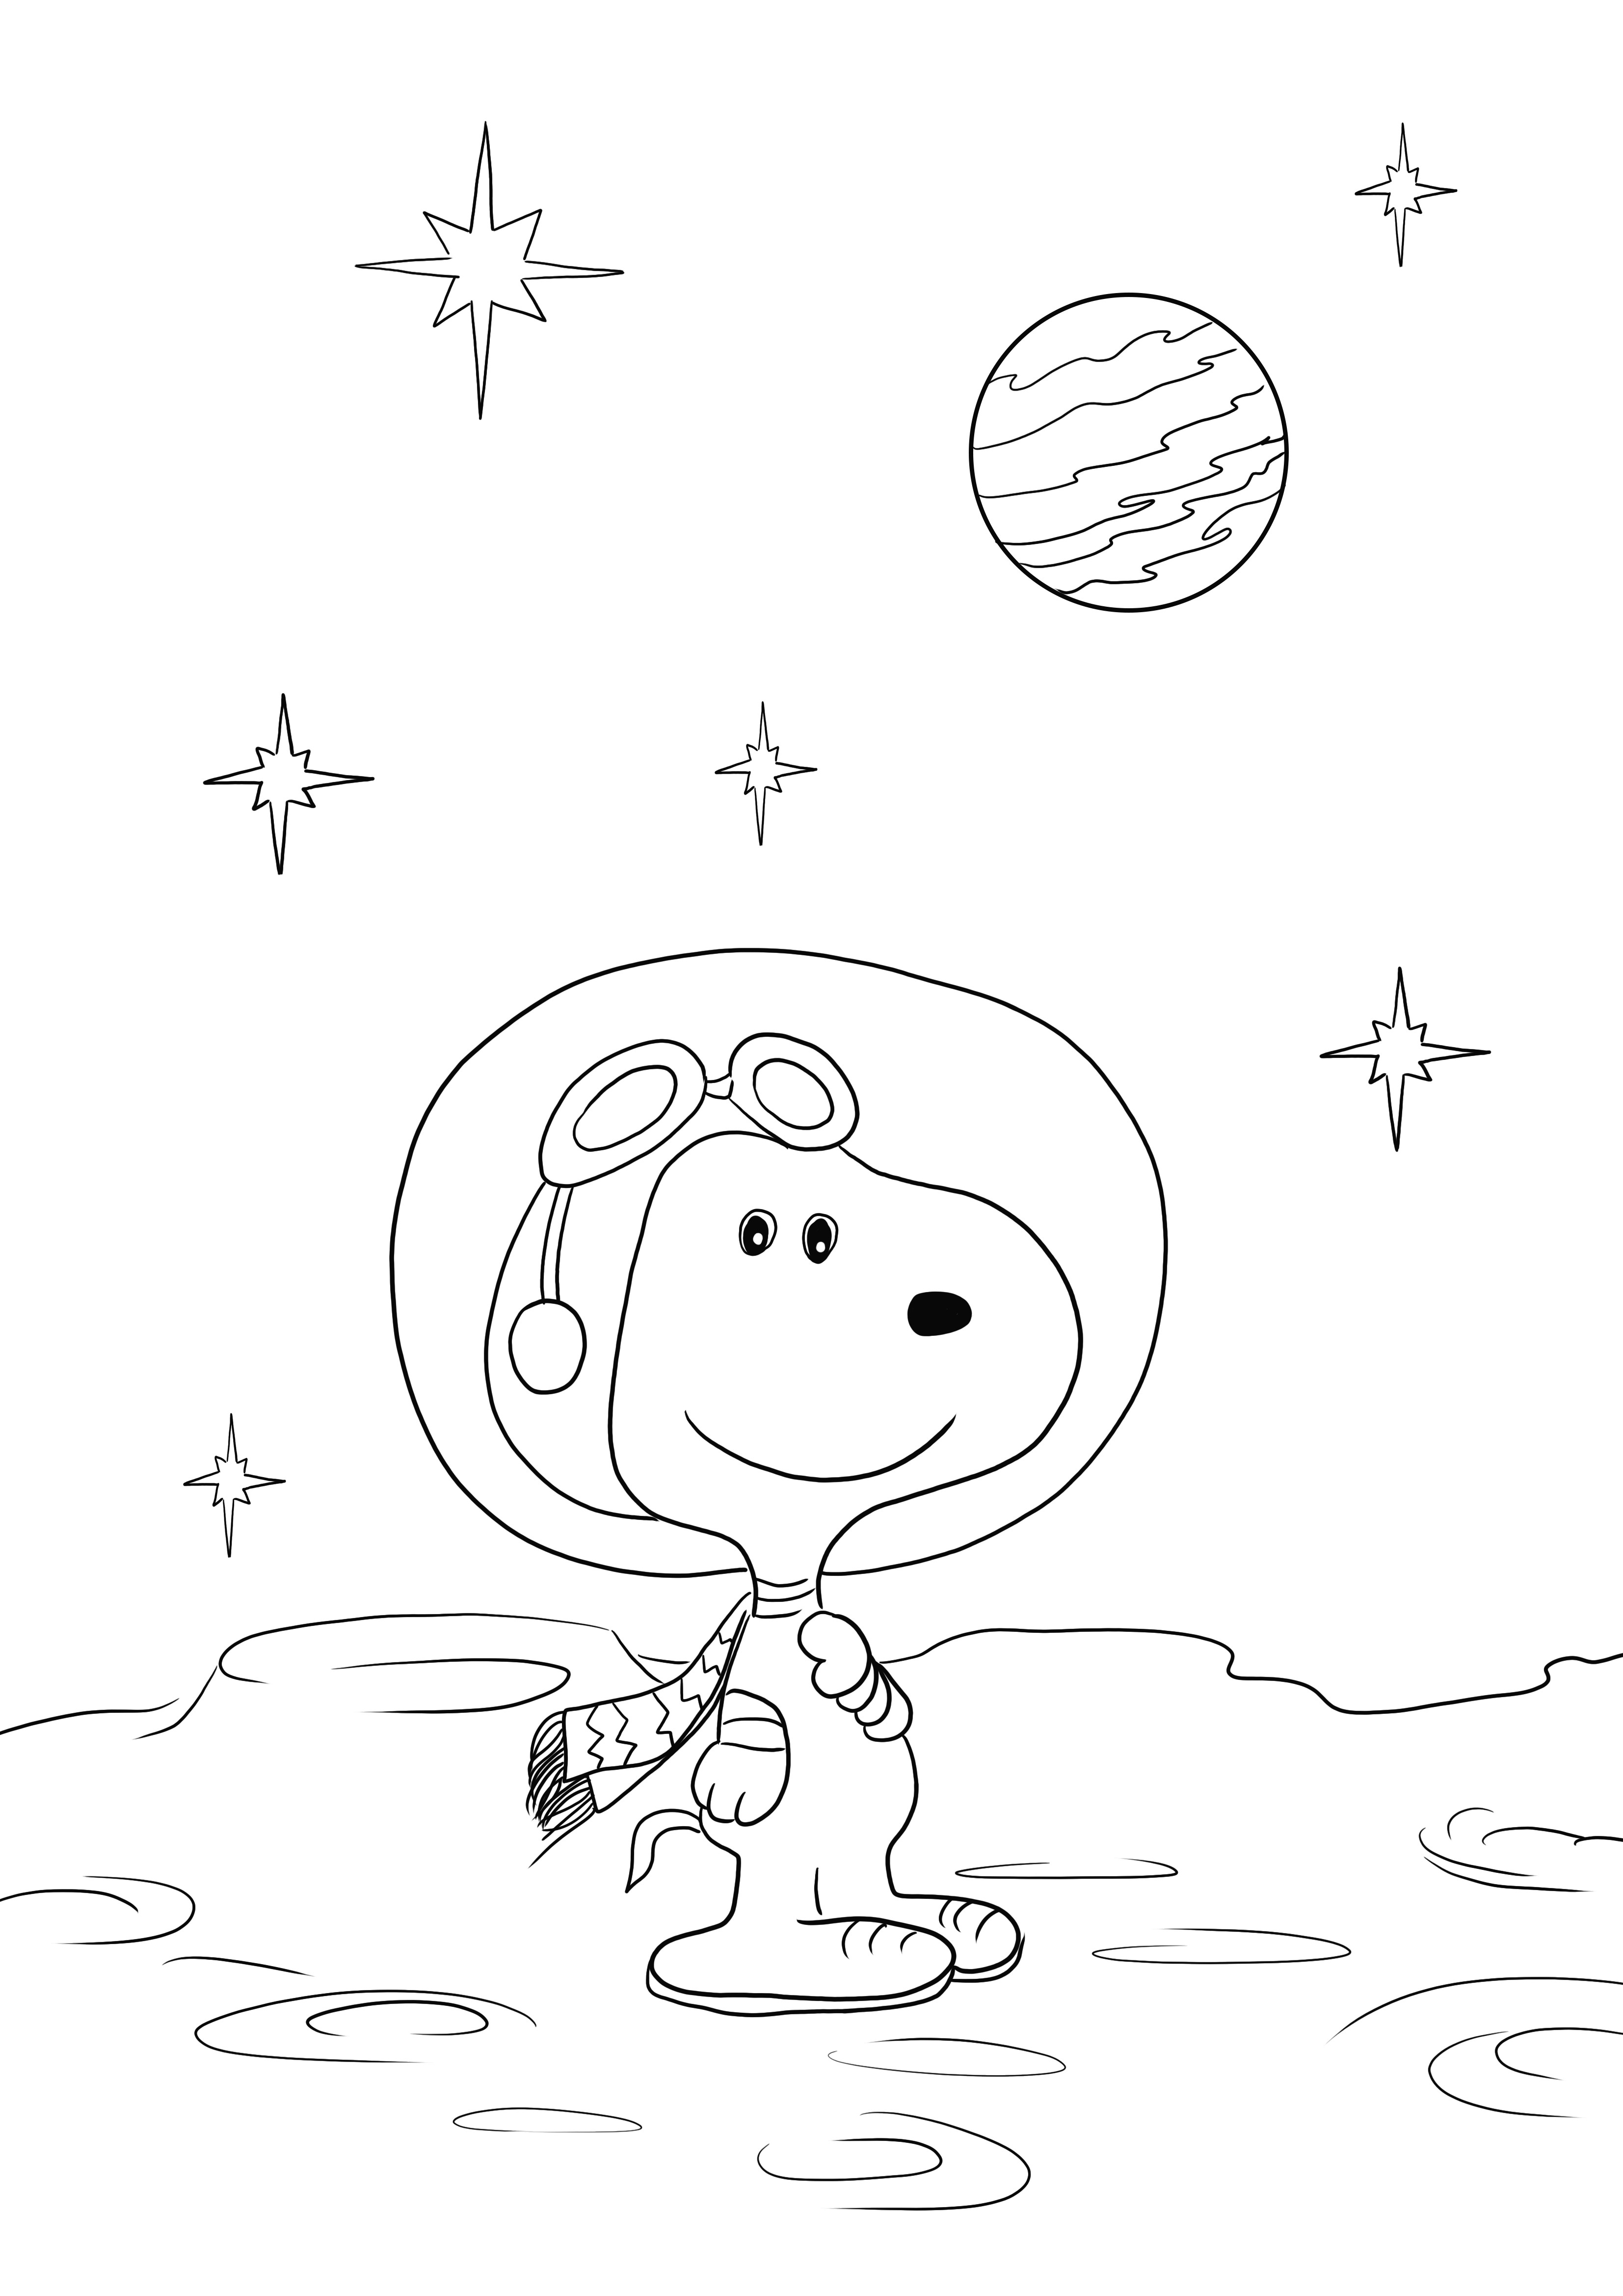 Aqui está nossa planilha gratuita do Snoopy in the Space para baixar ou imprimir e colorir